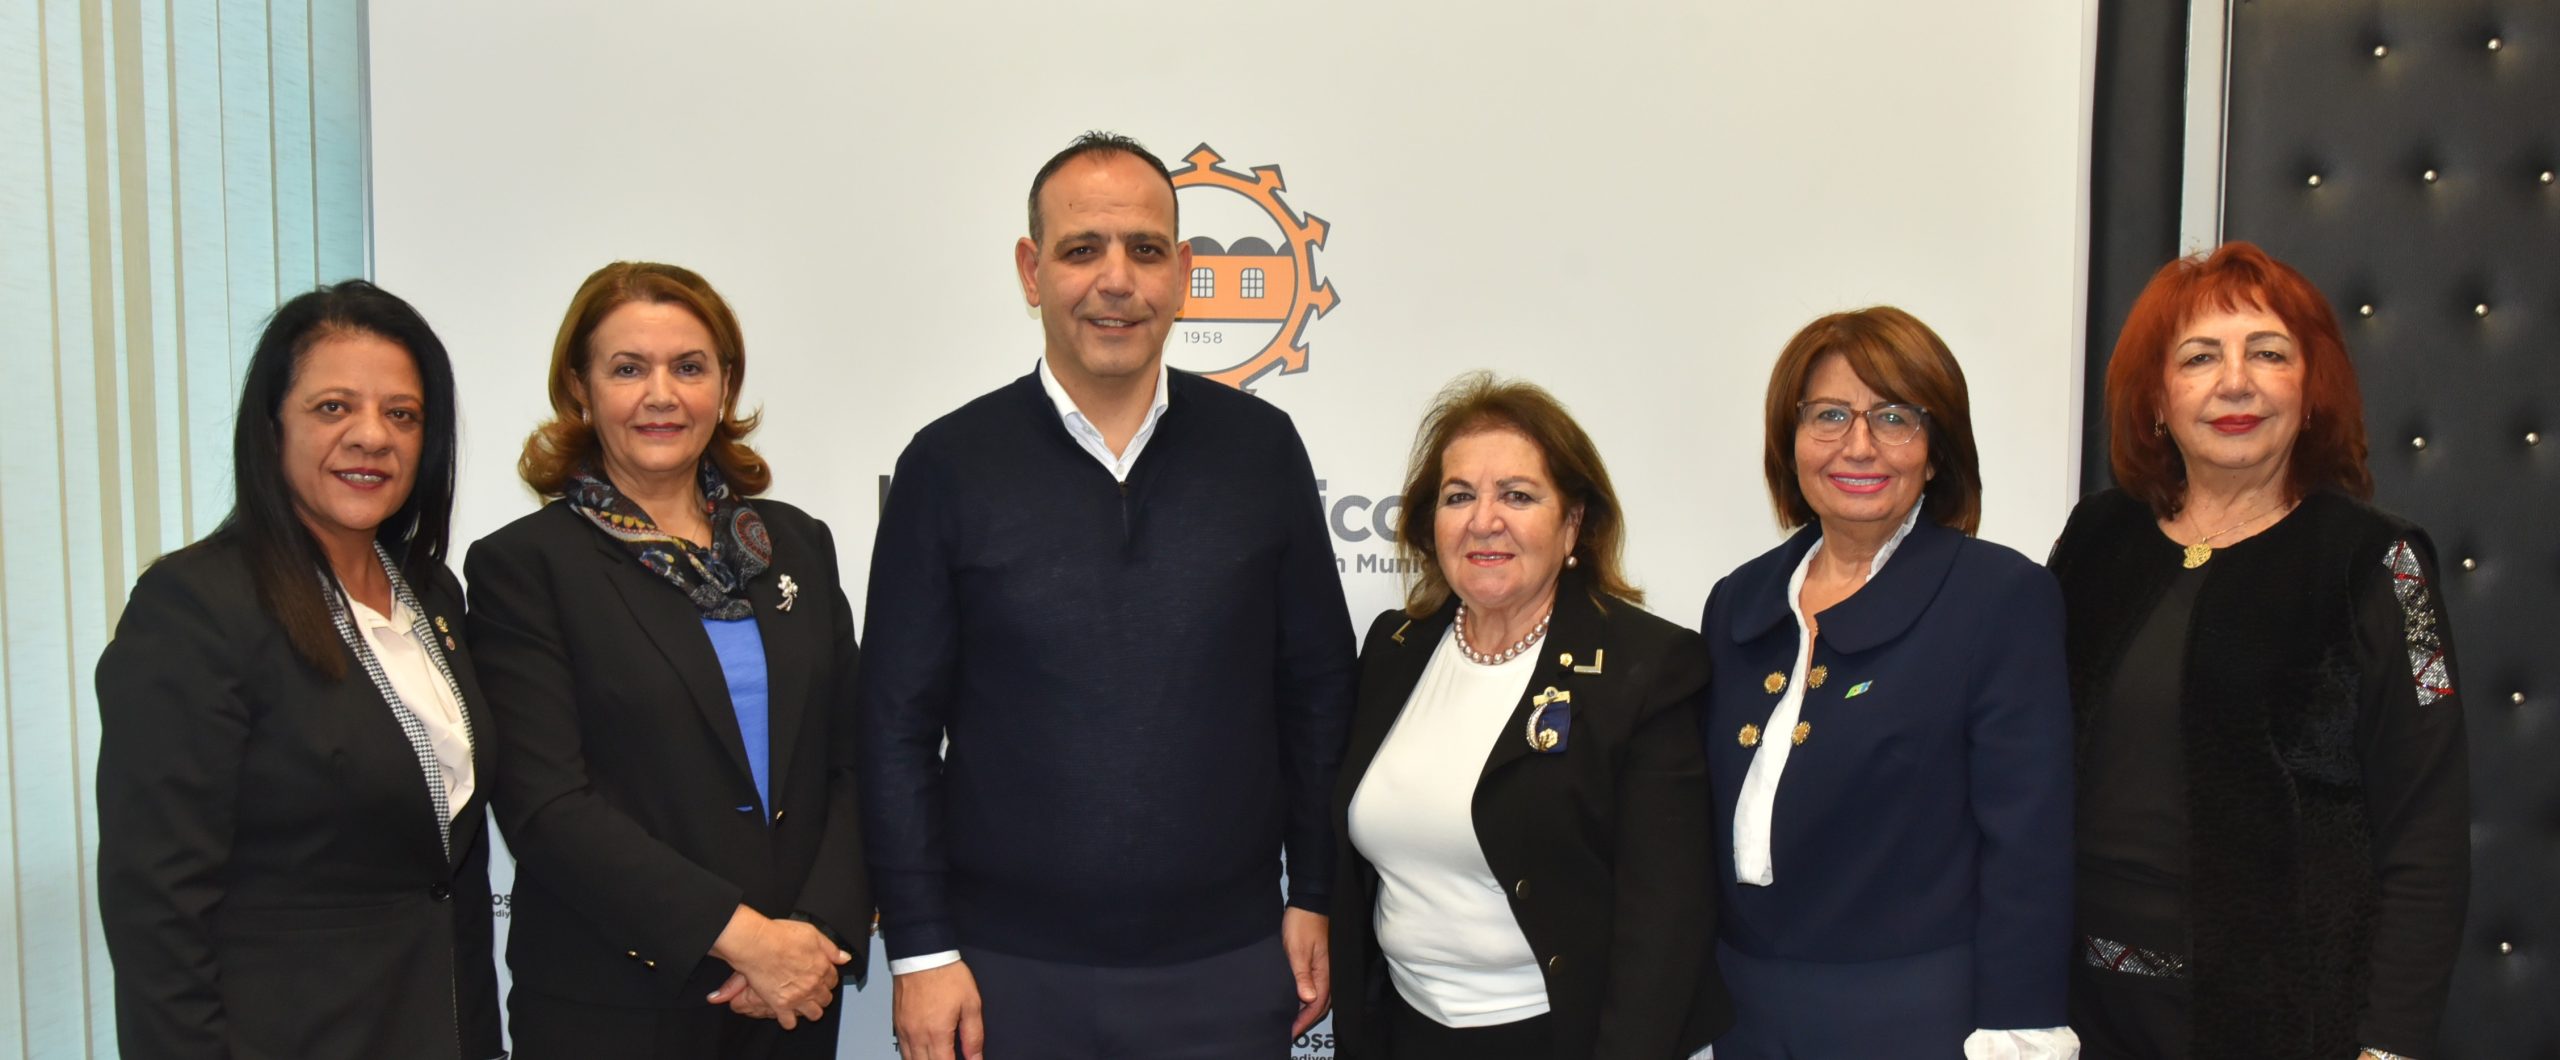 Harmancı Lefkoşa Başkent Lions Kulübü’nden bir heyeti kabul etti